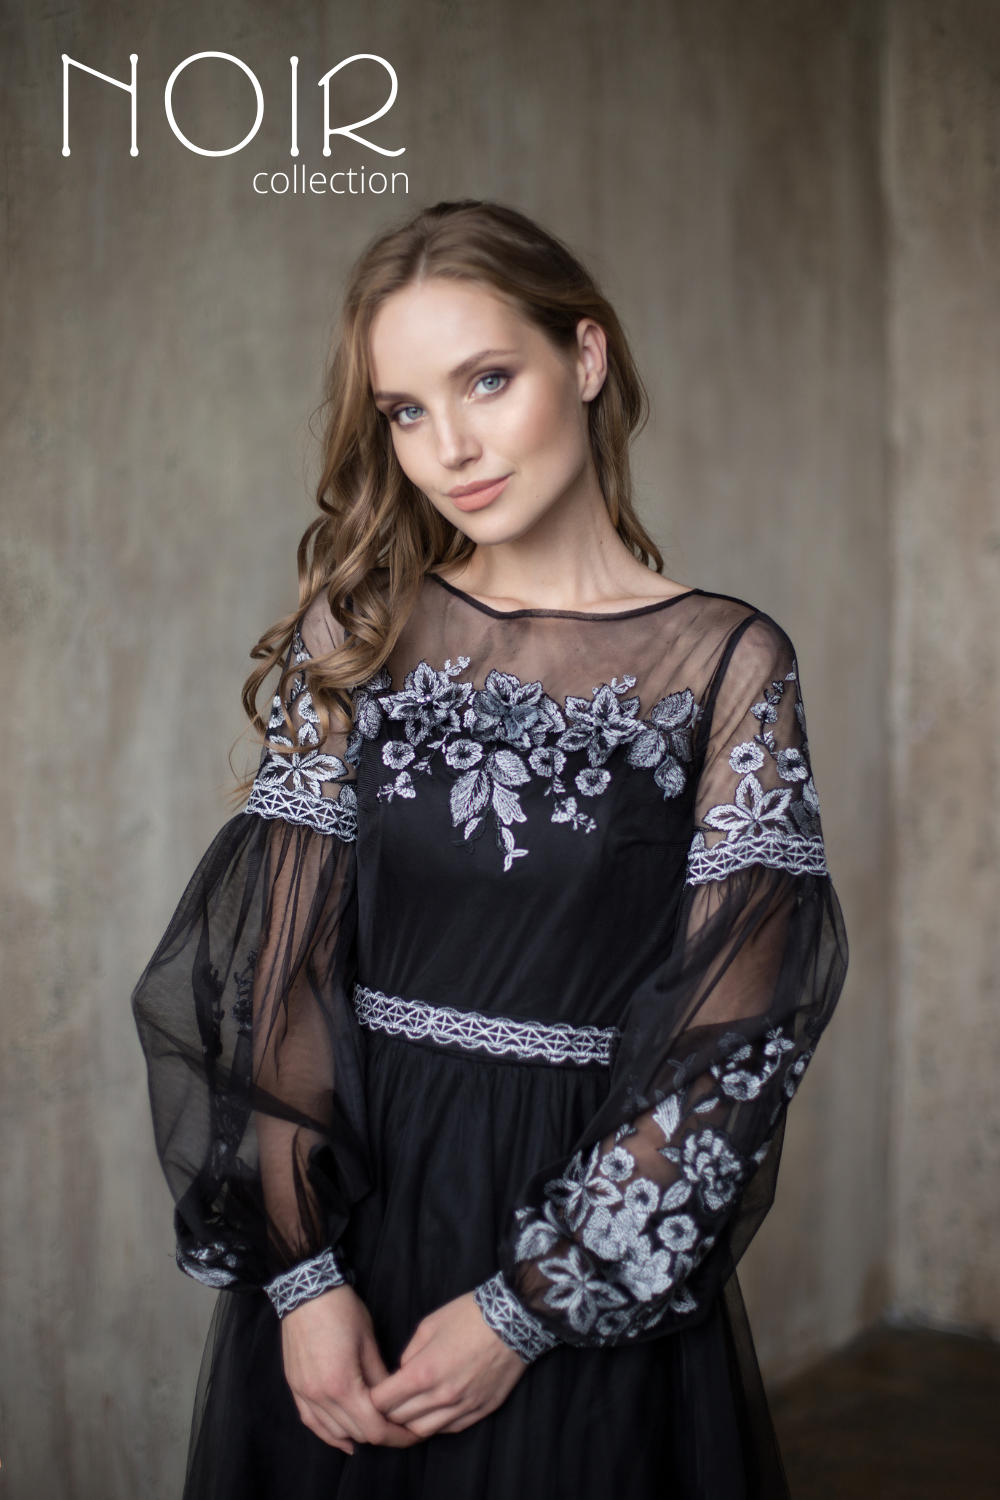 Купить Вечернее Платье В Белгороде Каталог